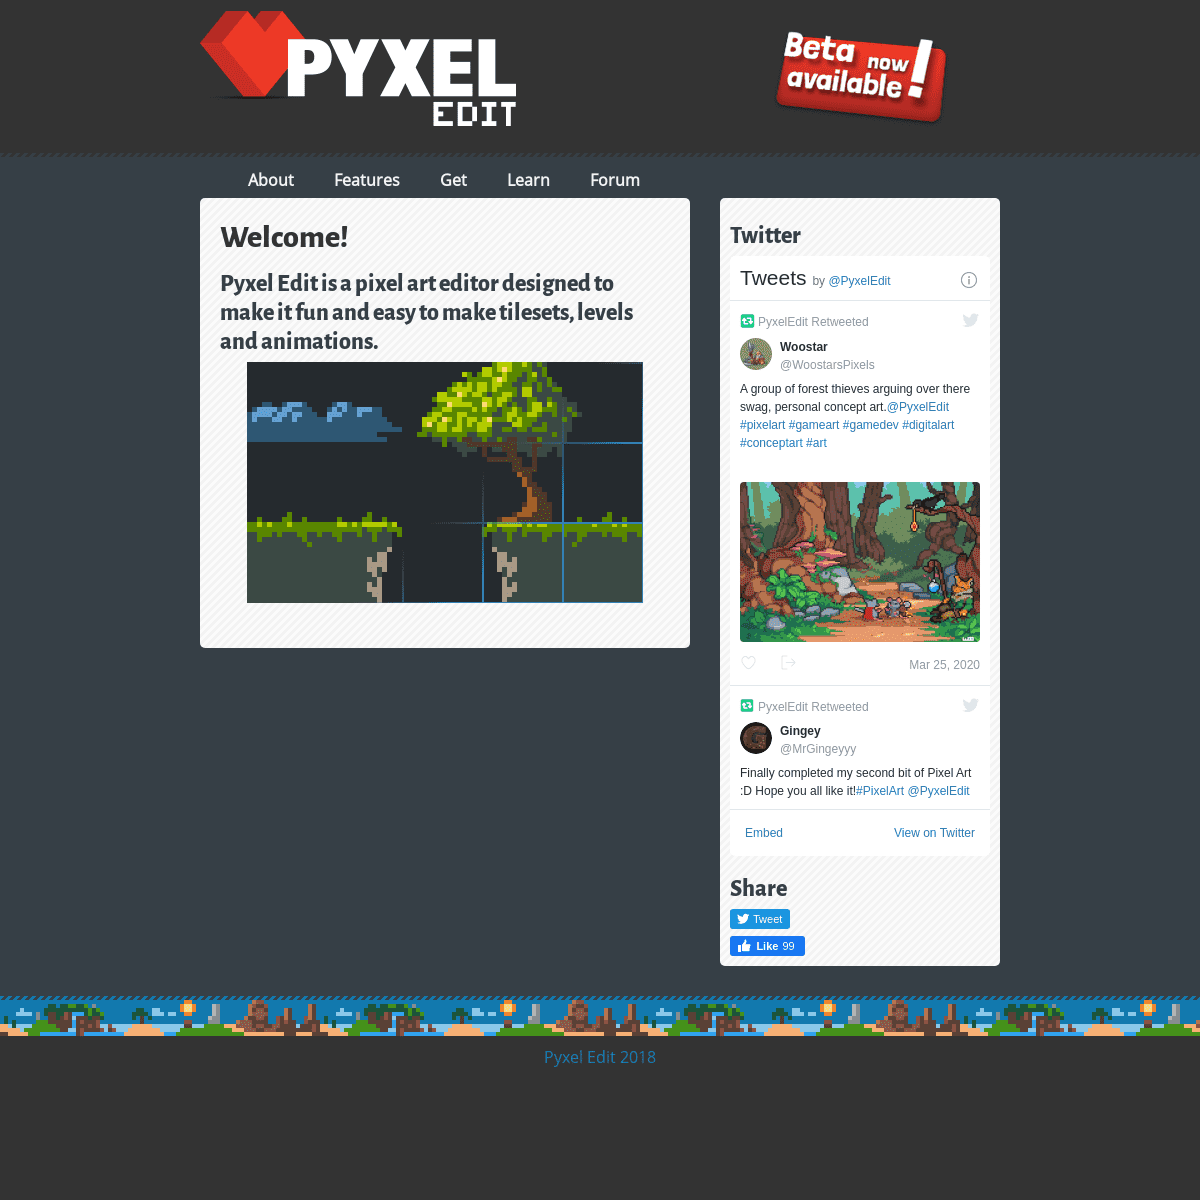 A complete backup of pyxeledit.com